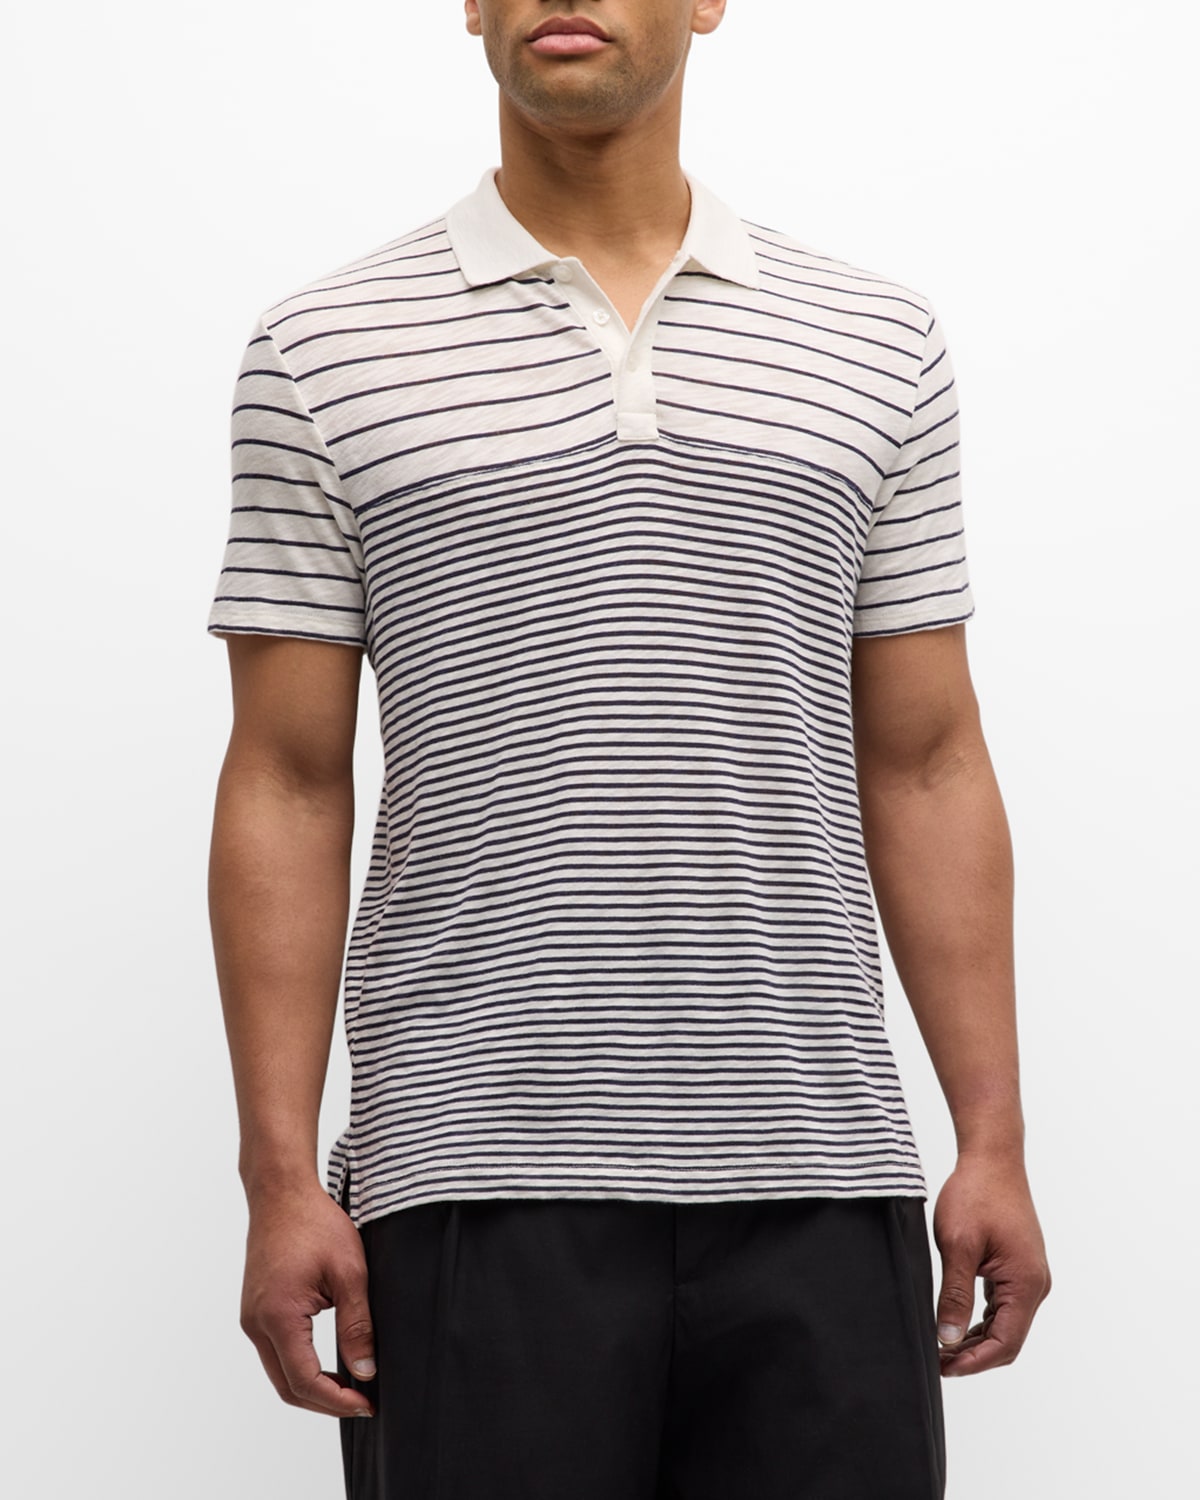 Men's Striped Slub Jersey Polo Shirt